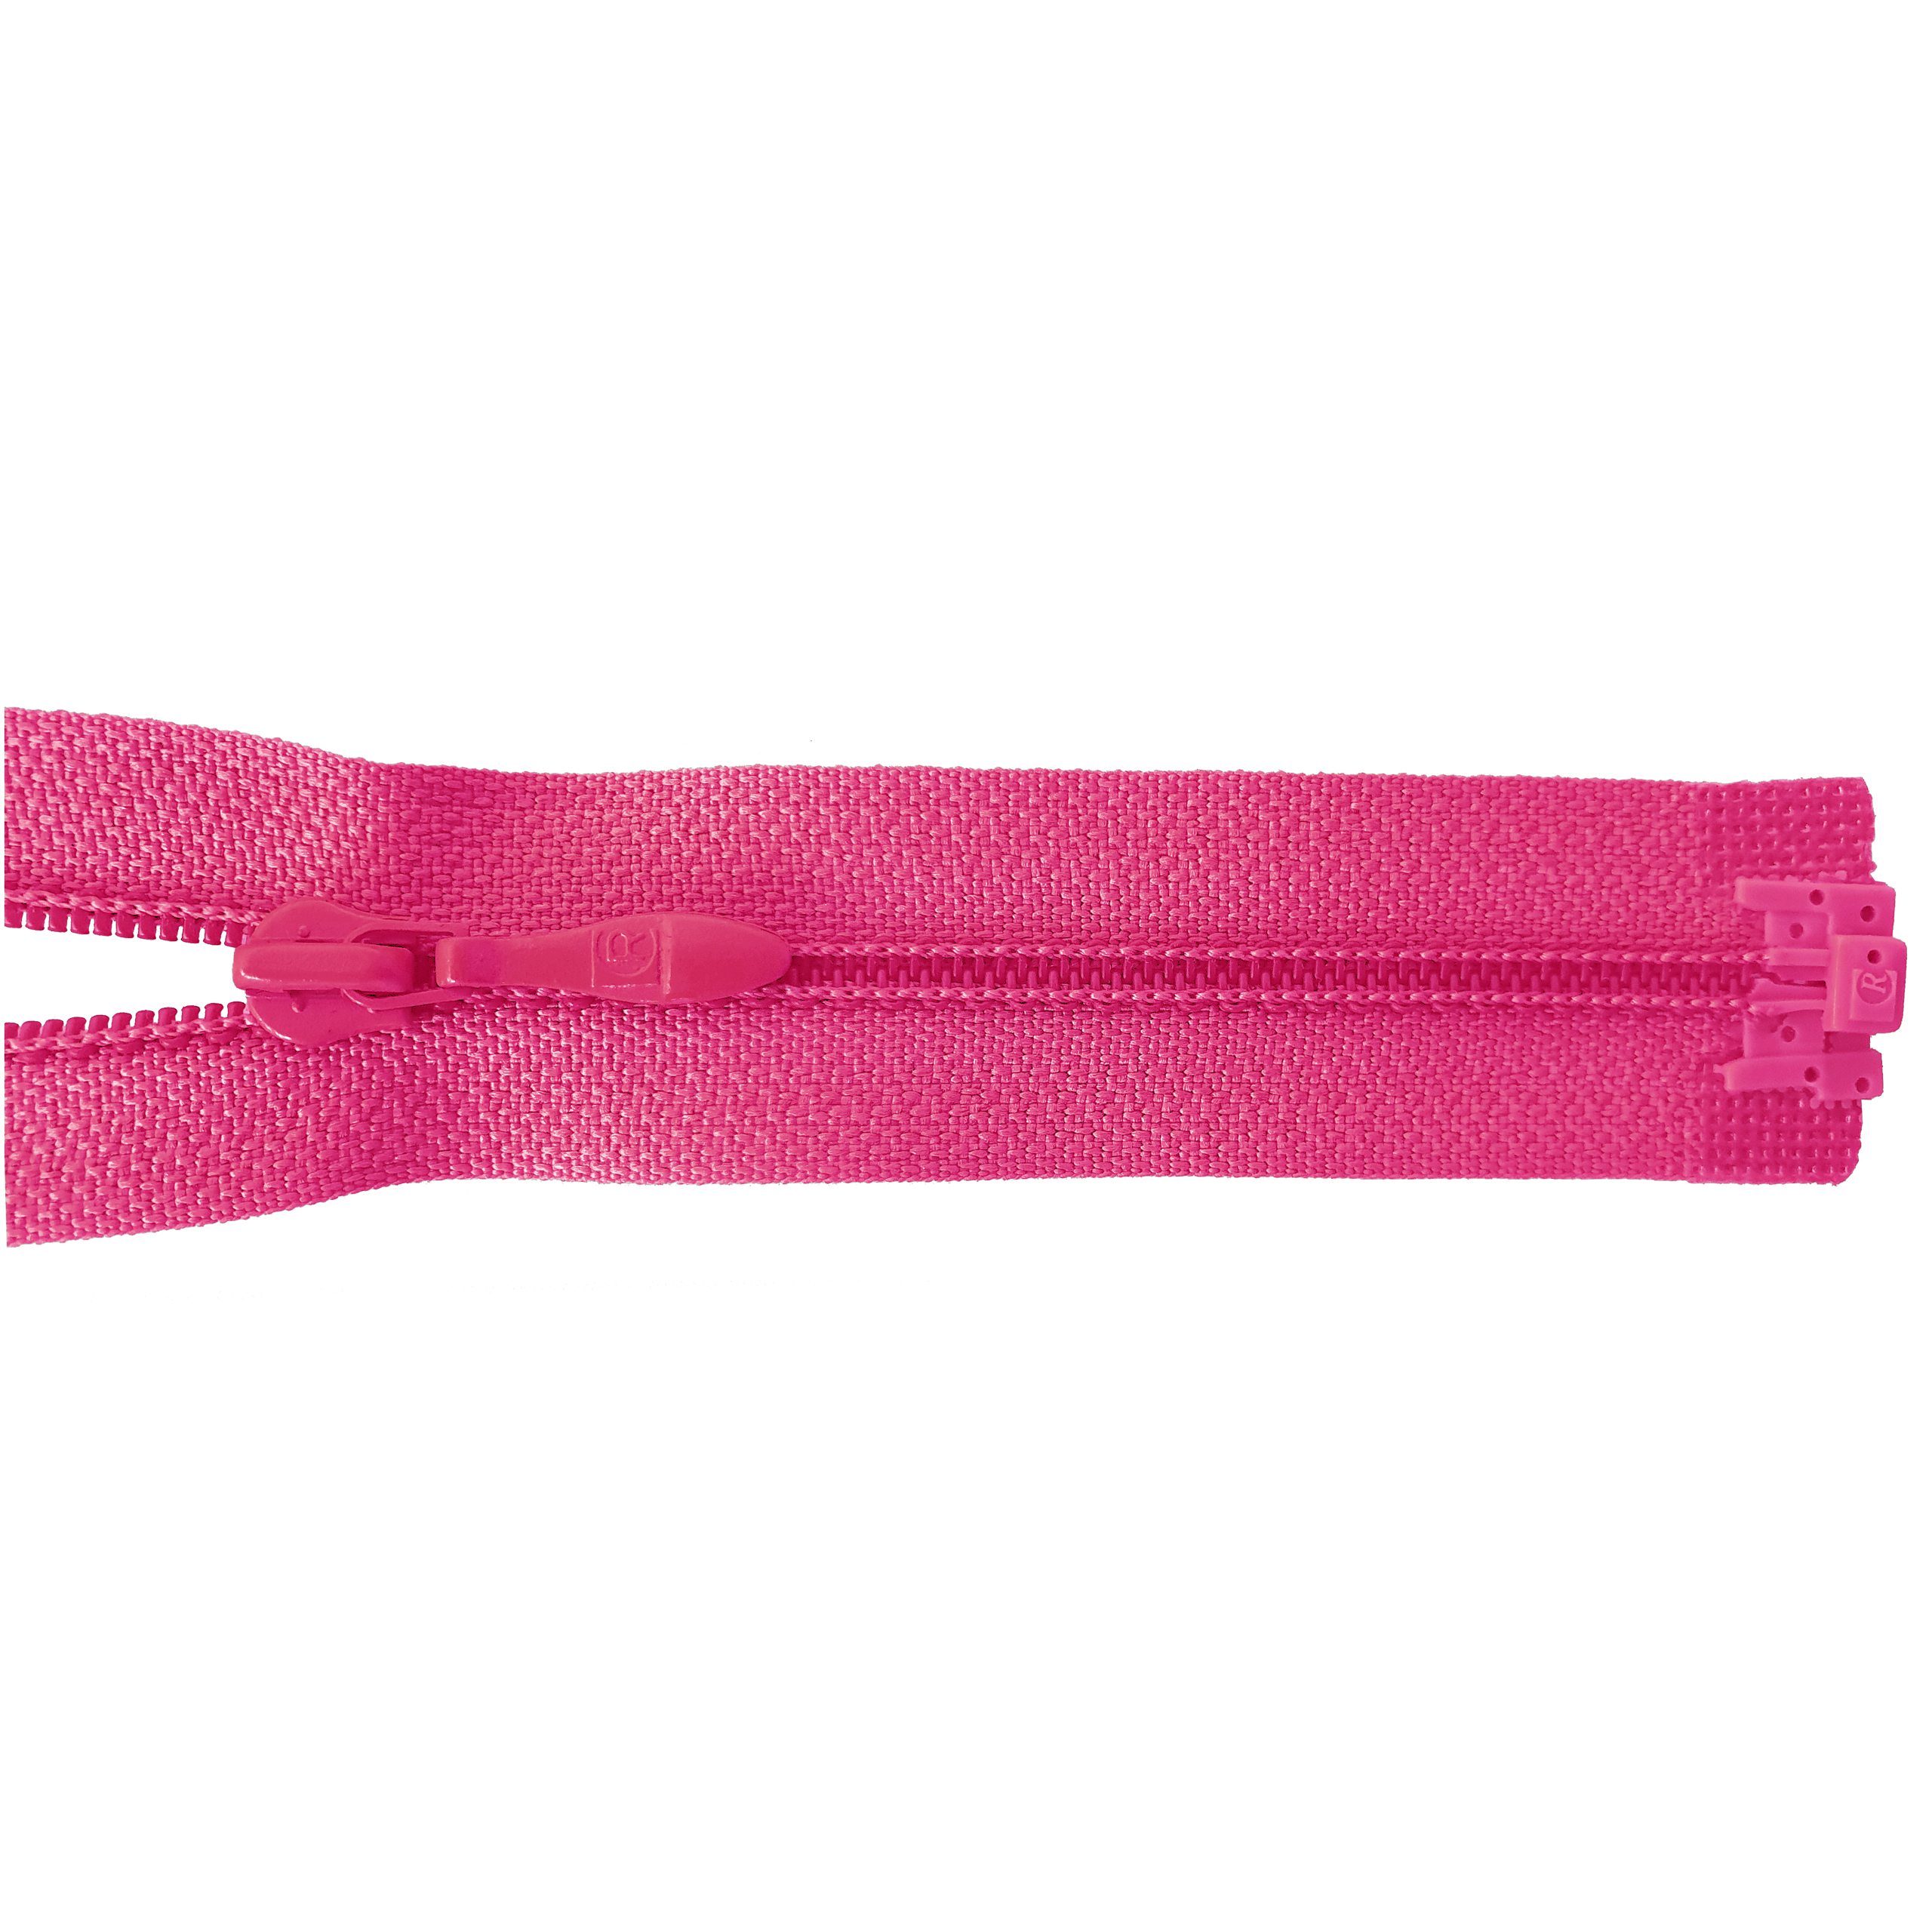 Reißverschluss 60cm, teilbar, PES-Spirale fein, pink, hochwertiger Marken-Reißverschluss von Rubi/Barcelona